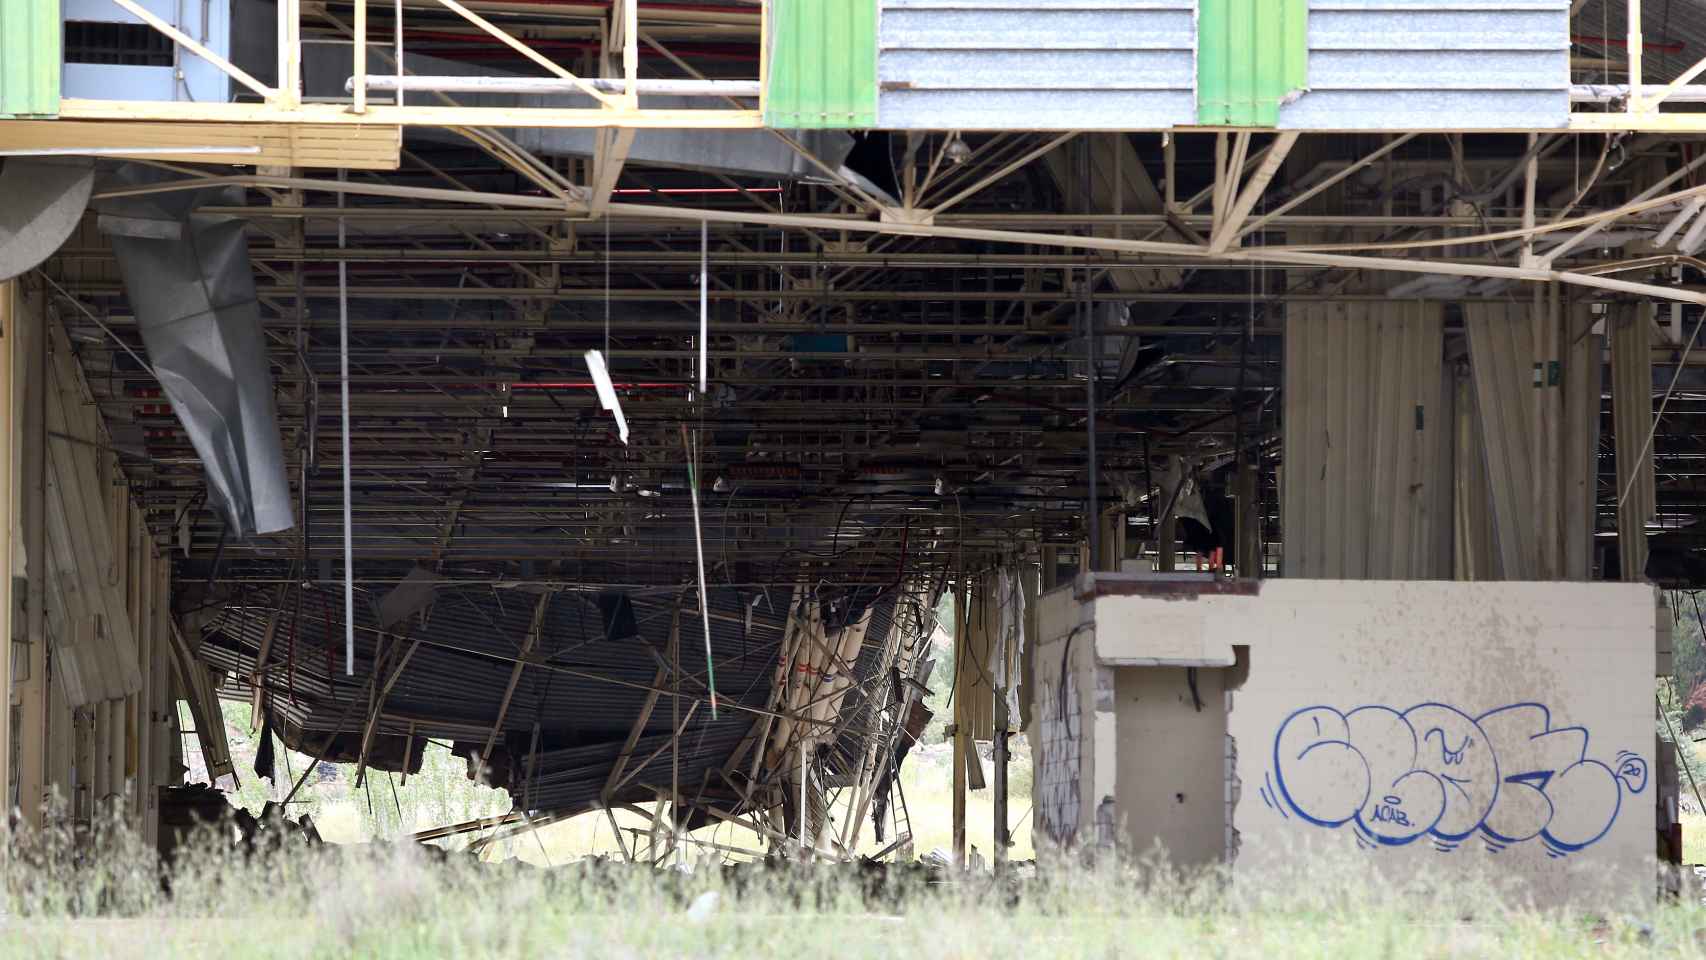 La fábrica ha sido saqueada y vandalizada en los últimos tiempos.